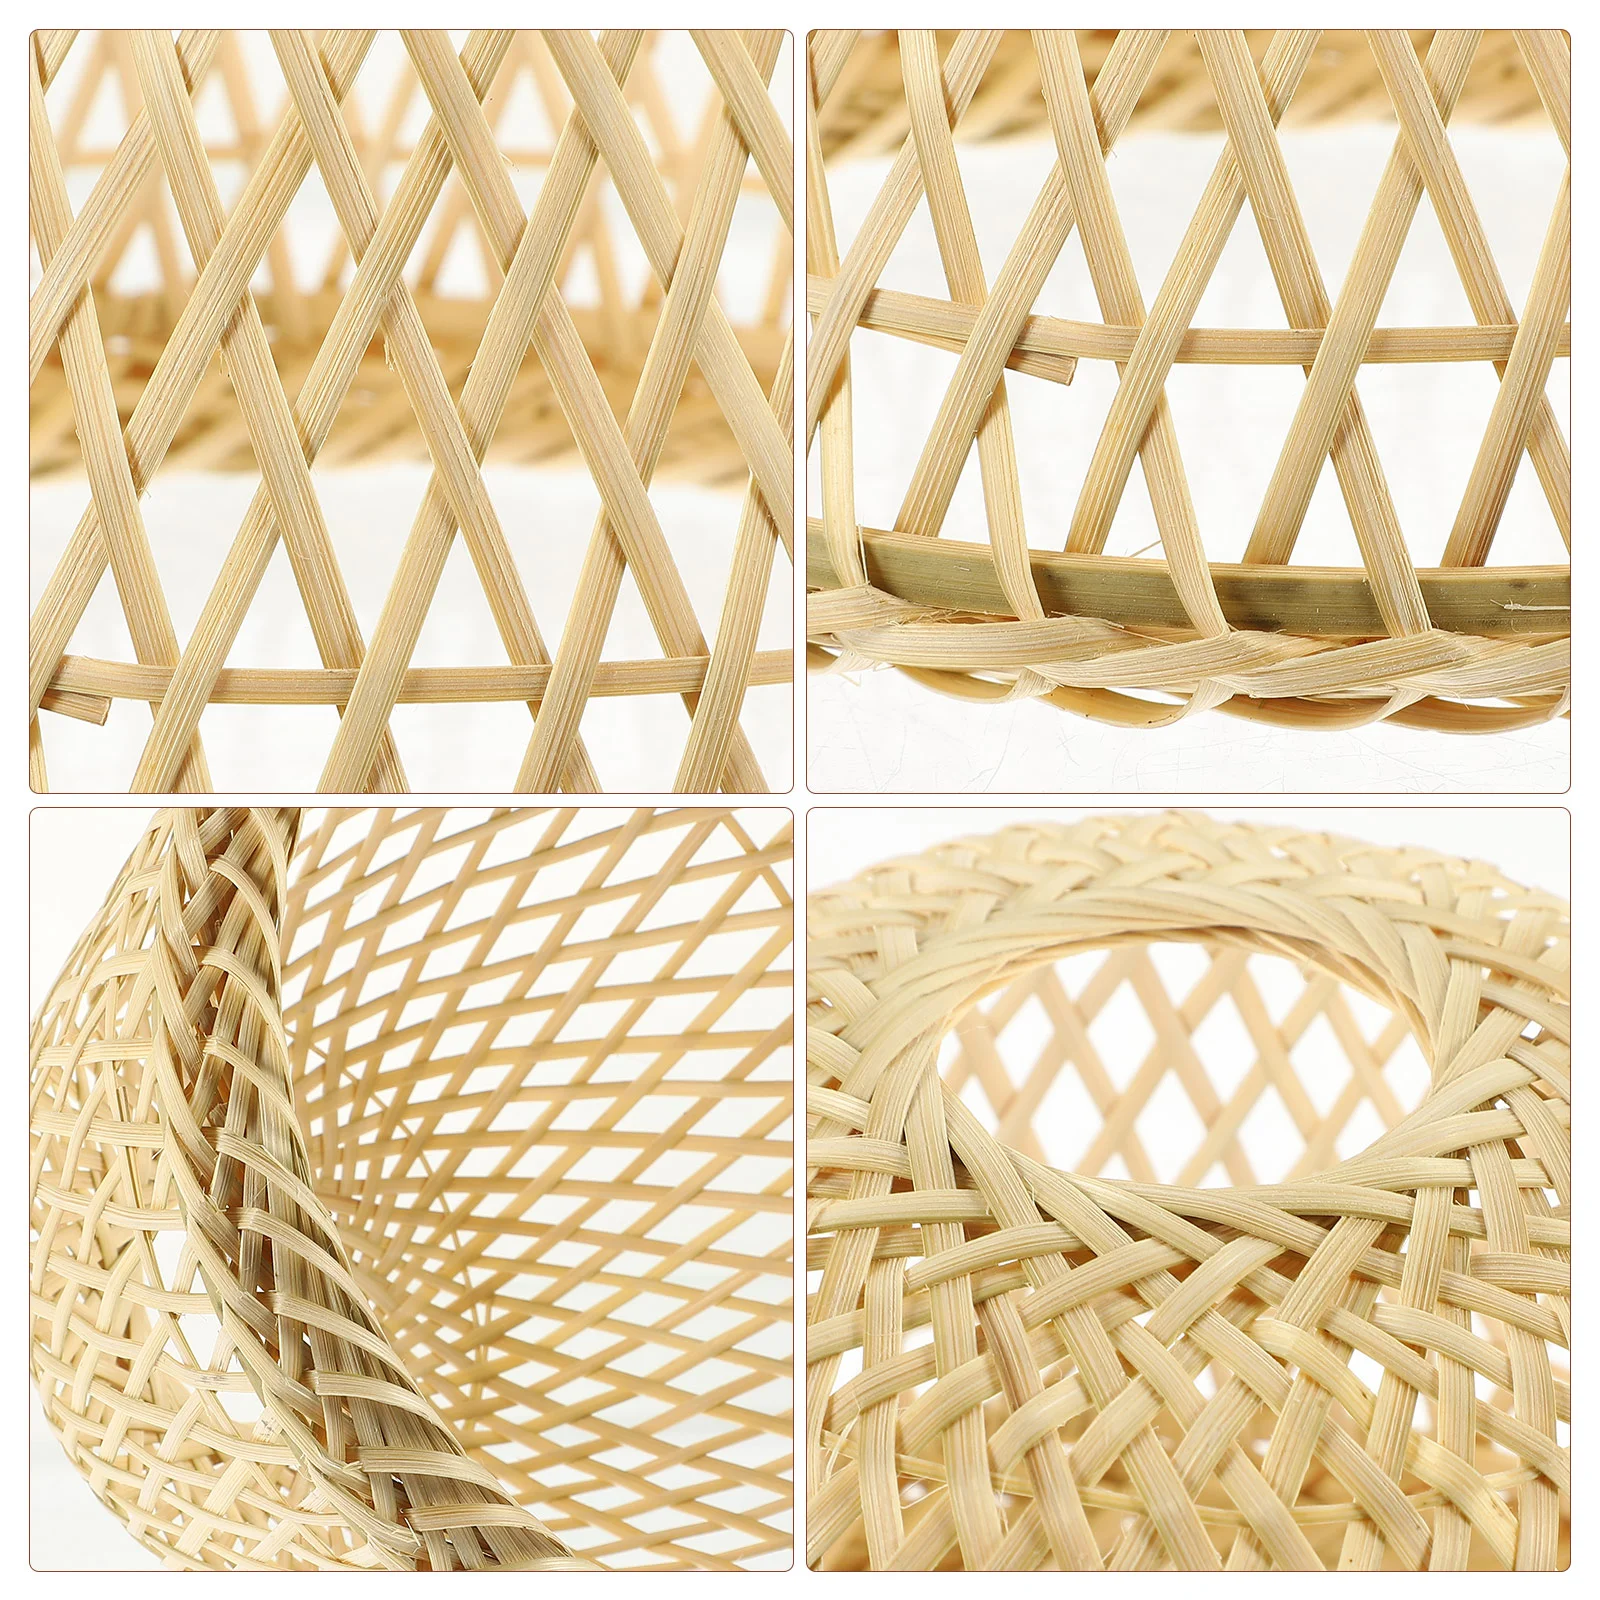 Изысканный чехол для светильника ручной работы, декоративный абажур из бамбукового ткачества